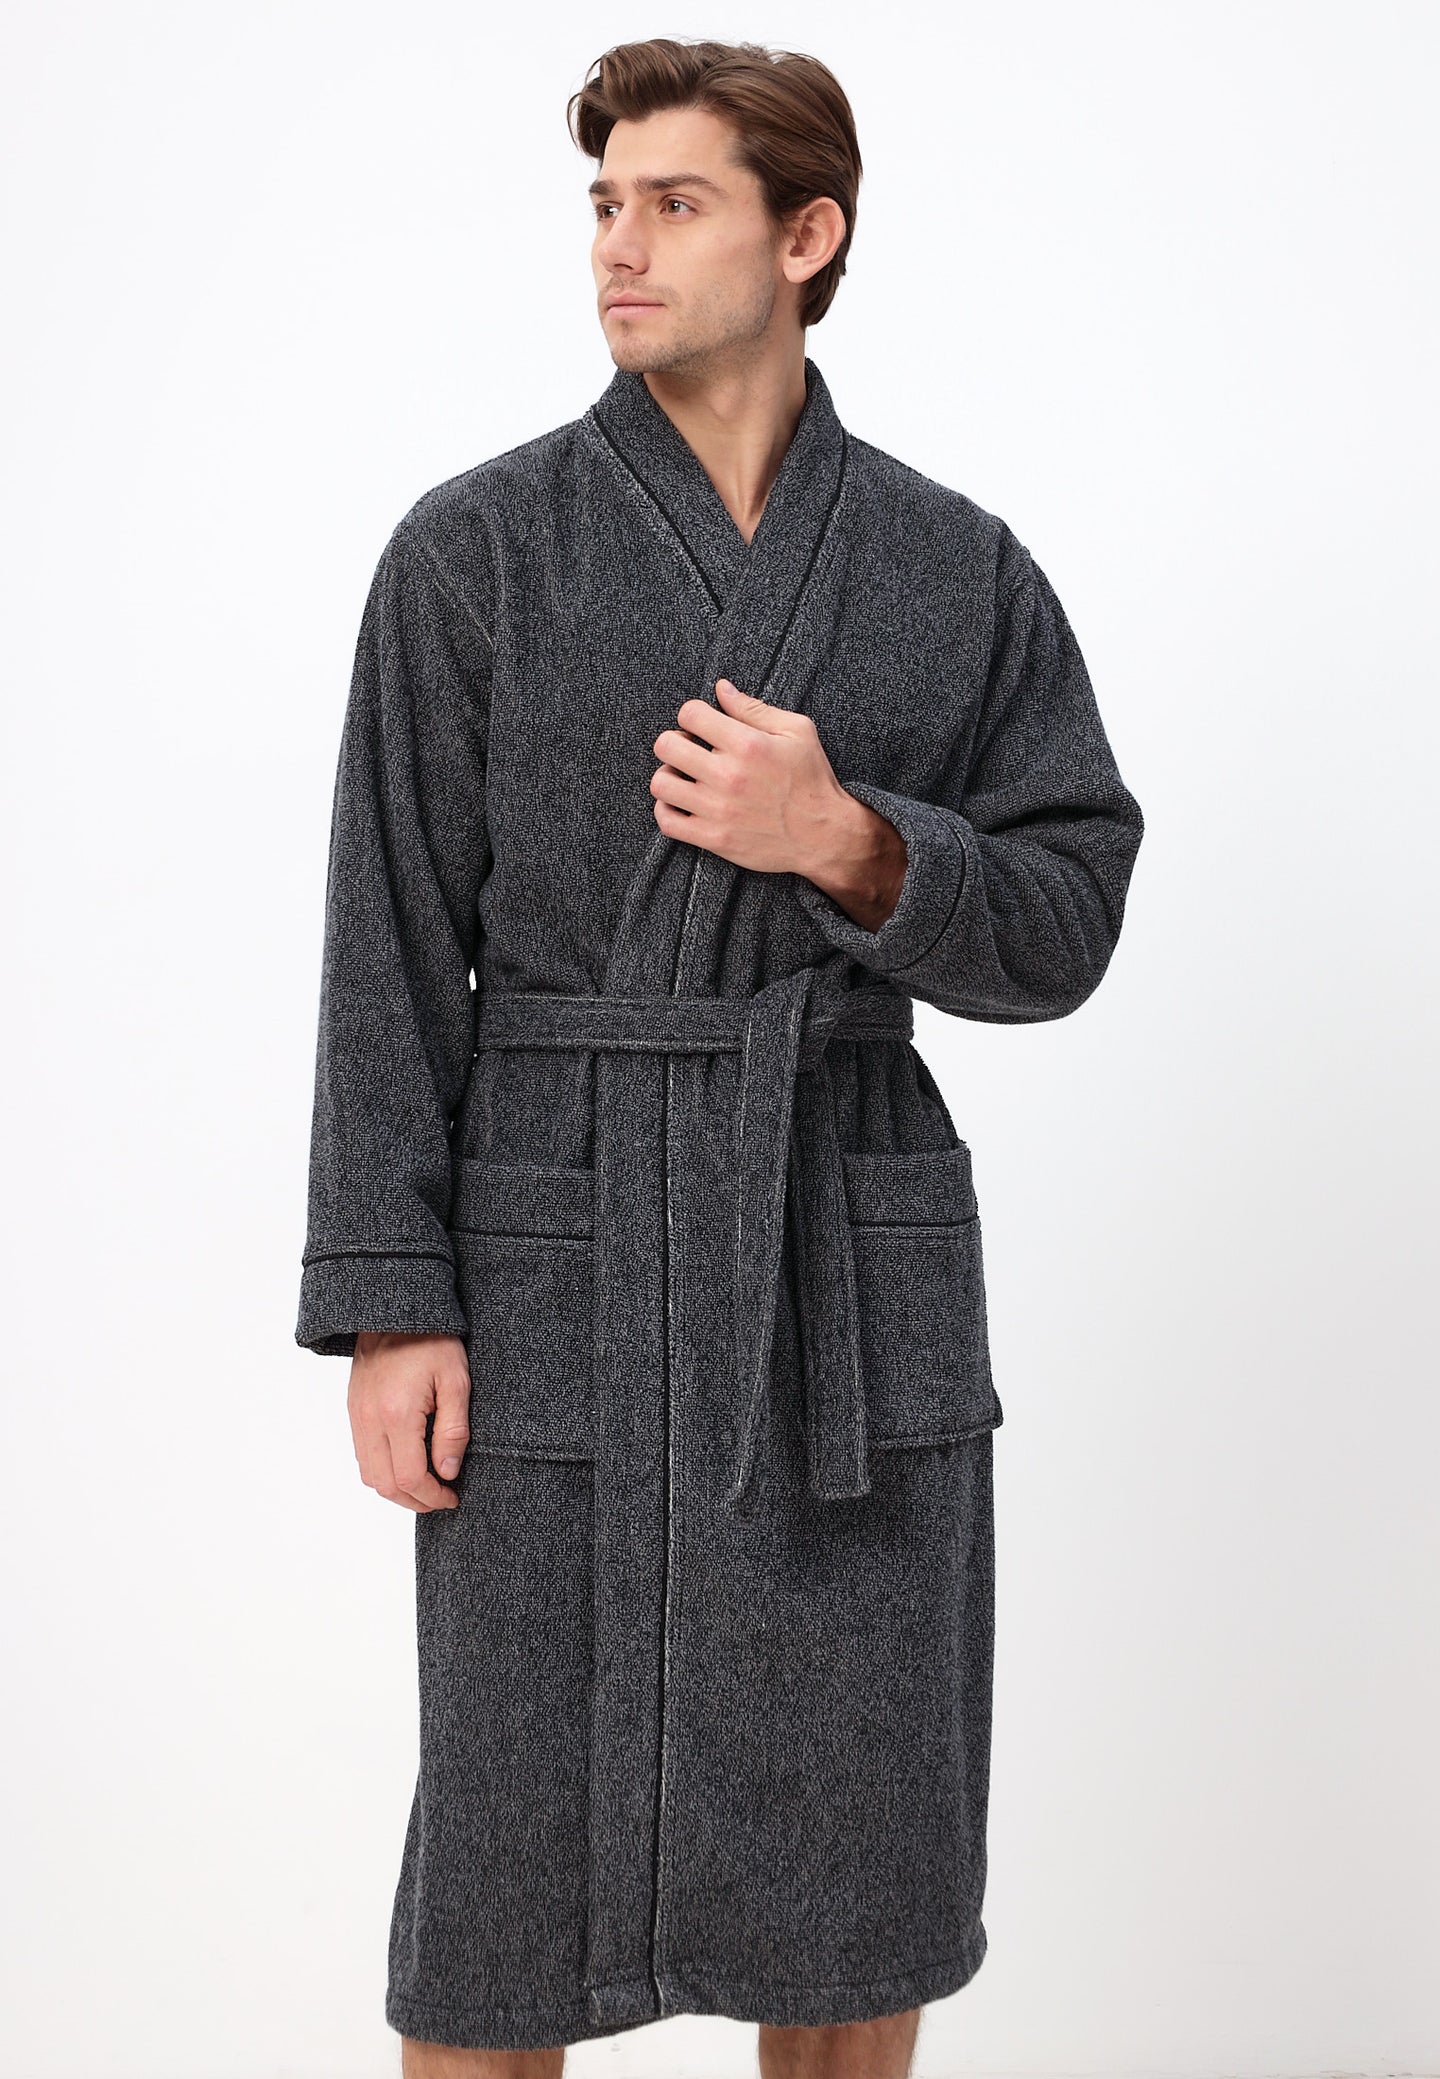 Herren Kimono Bademantel aus 100% Baumwolle in melange Design LMS-6592 Schwarz/Weiß Melange